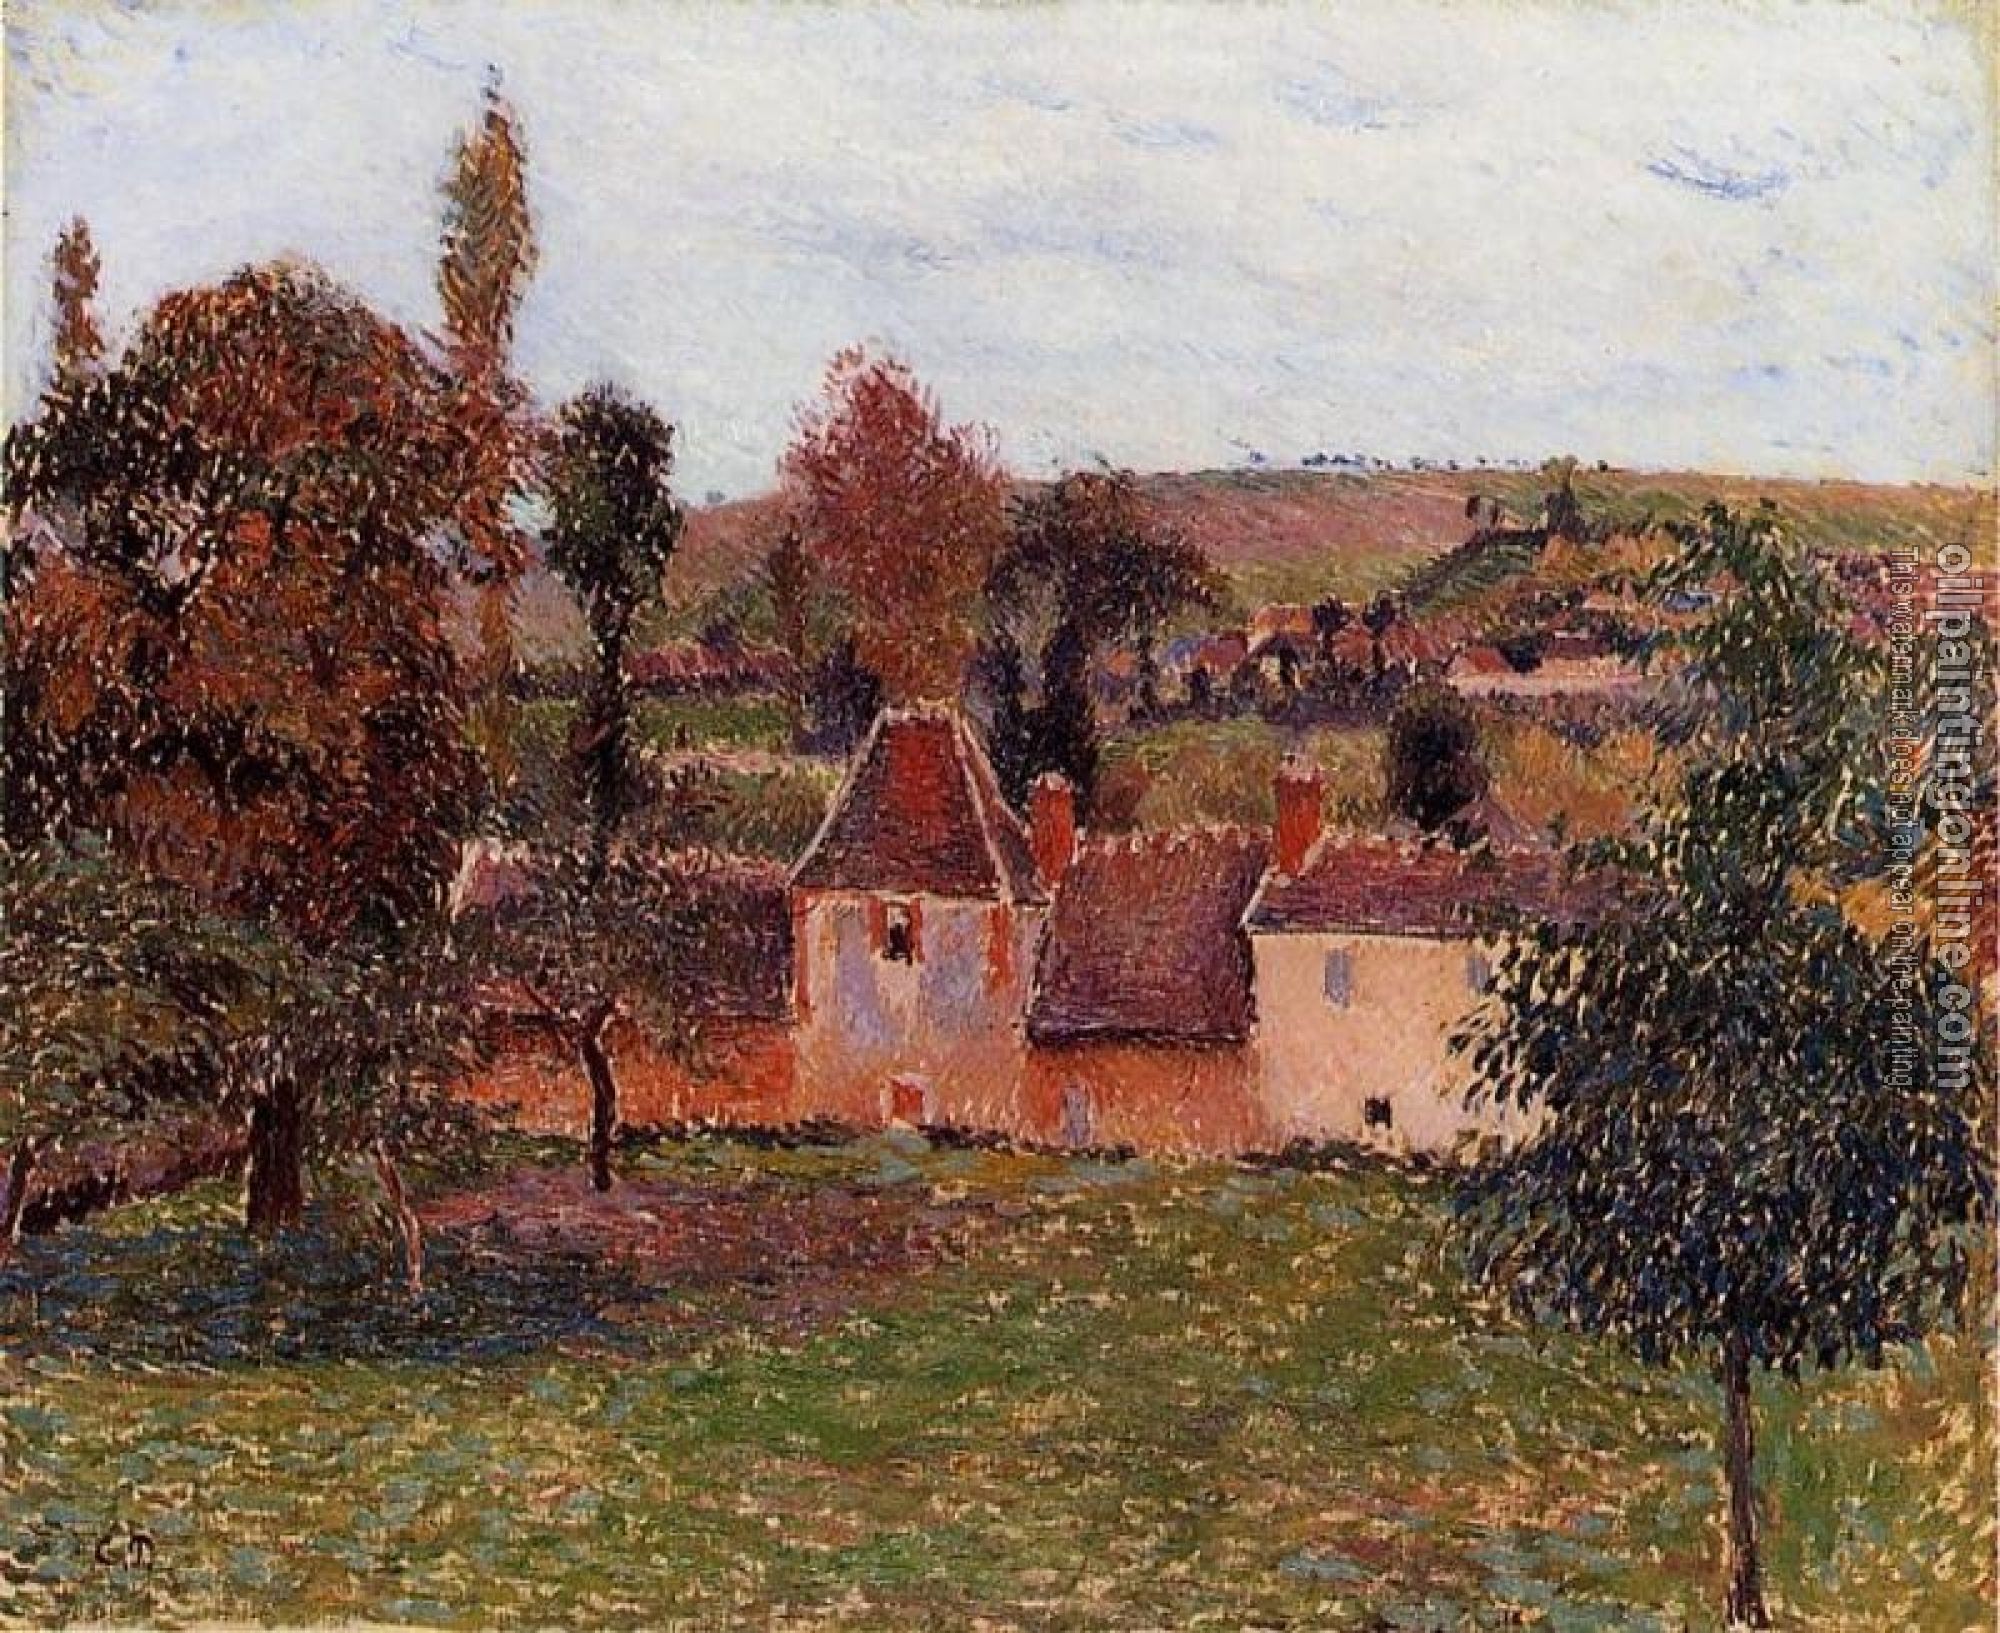 Pissarro, Camille - Farm at Basincourt